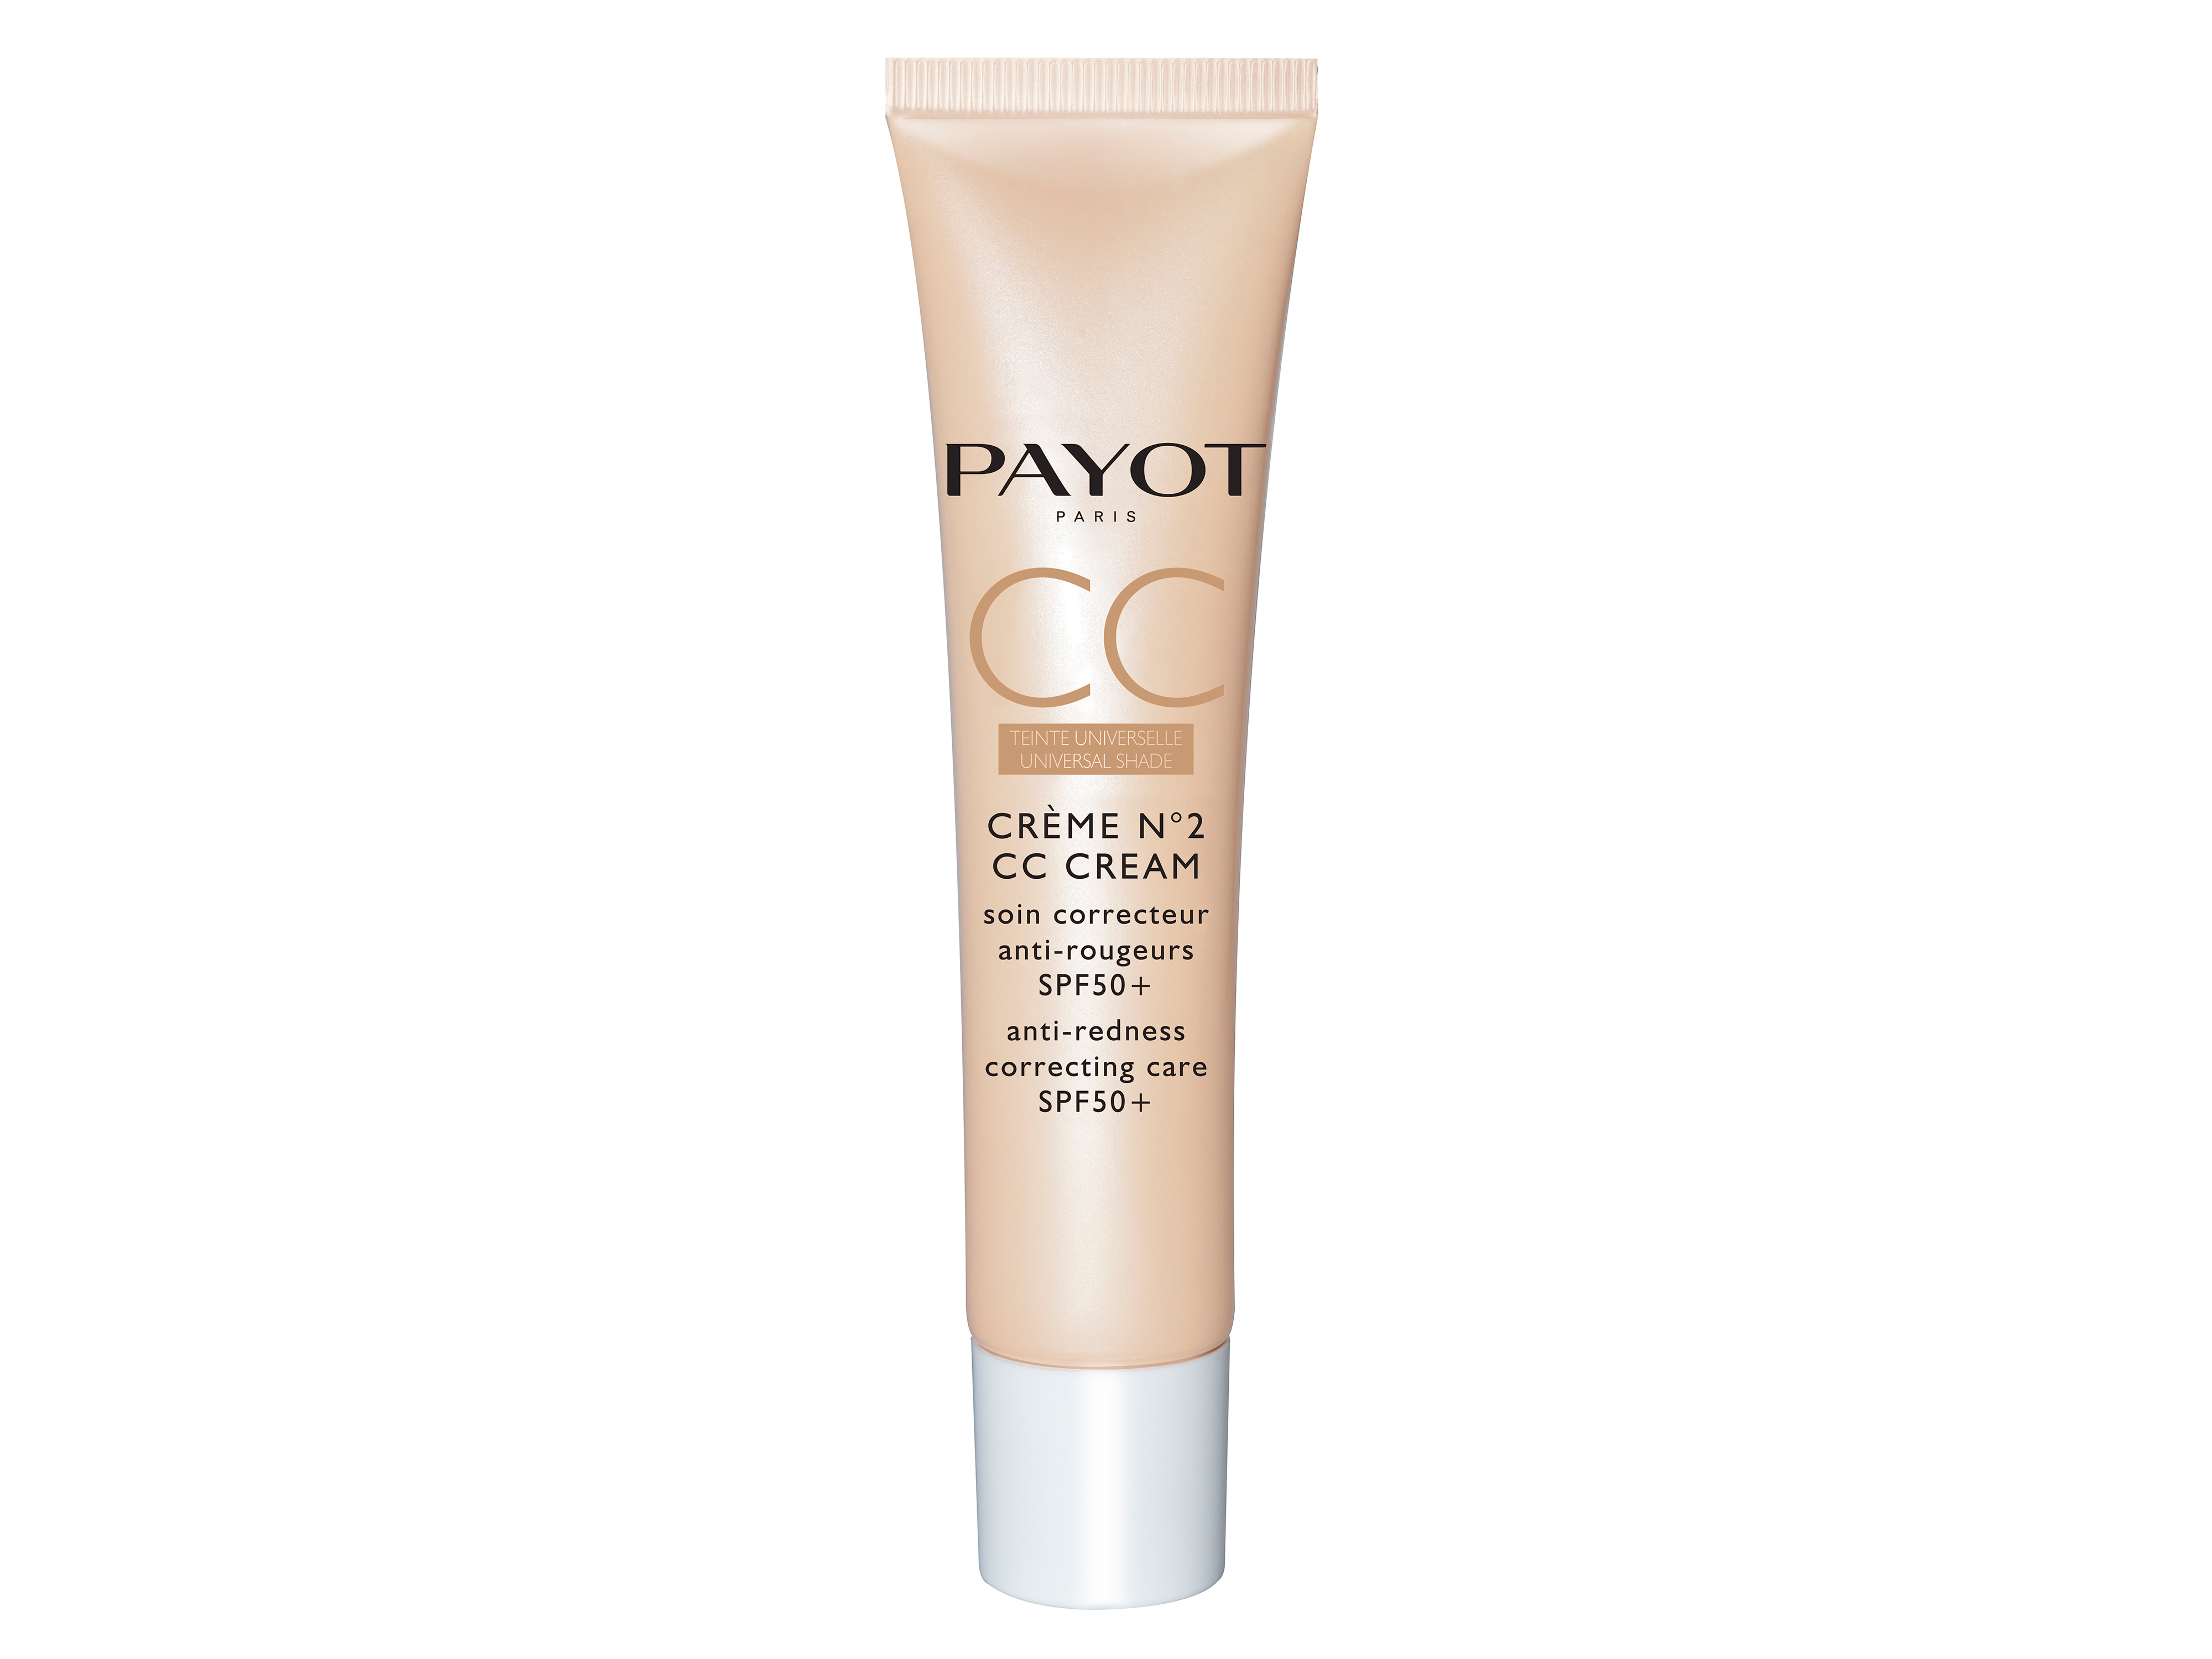 Payot Creme N°2 CC Cream SPF50+, 40 ml